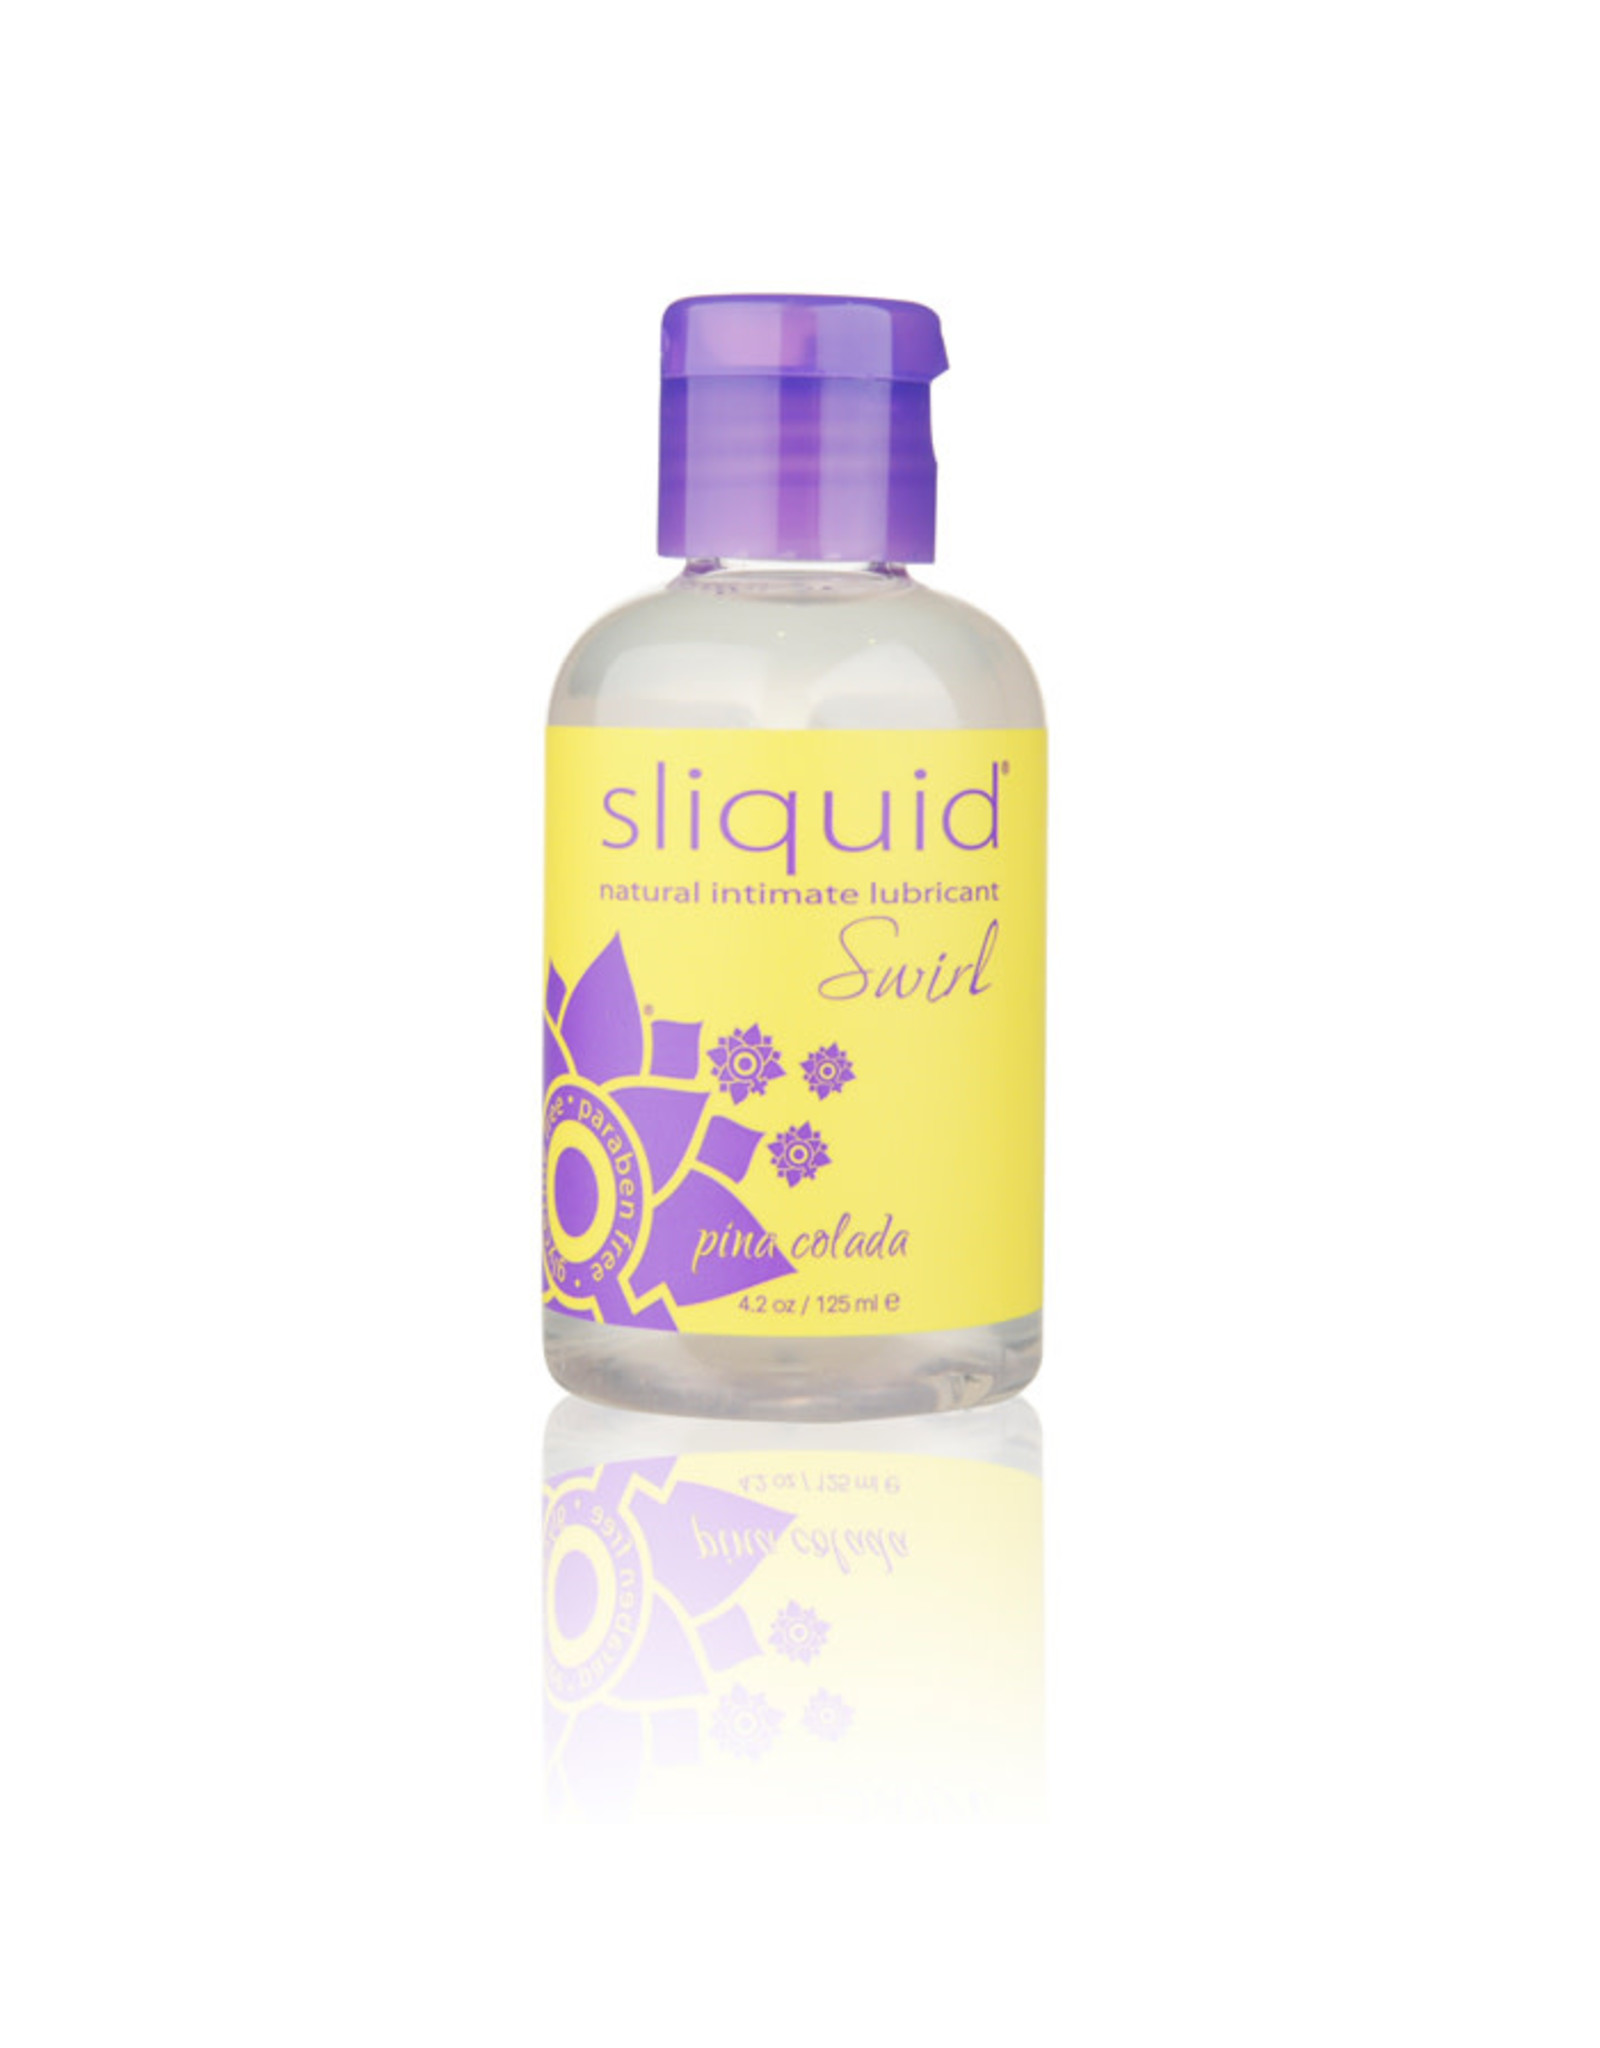 Sliquid Sliquid Swirl - Pina Colada (4.2oz)